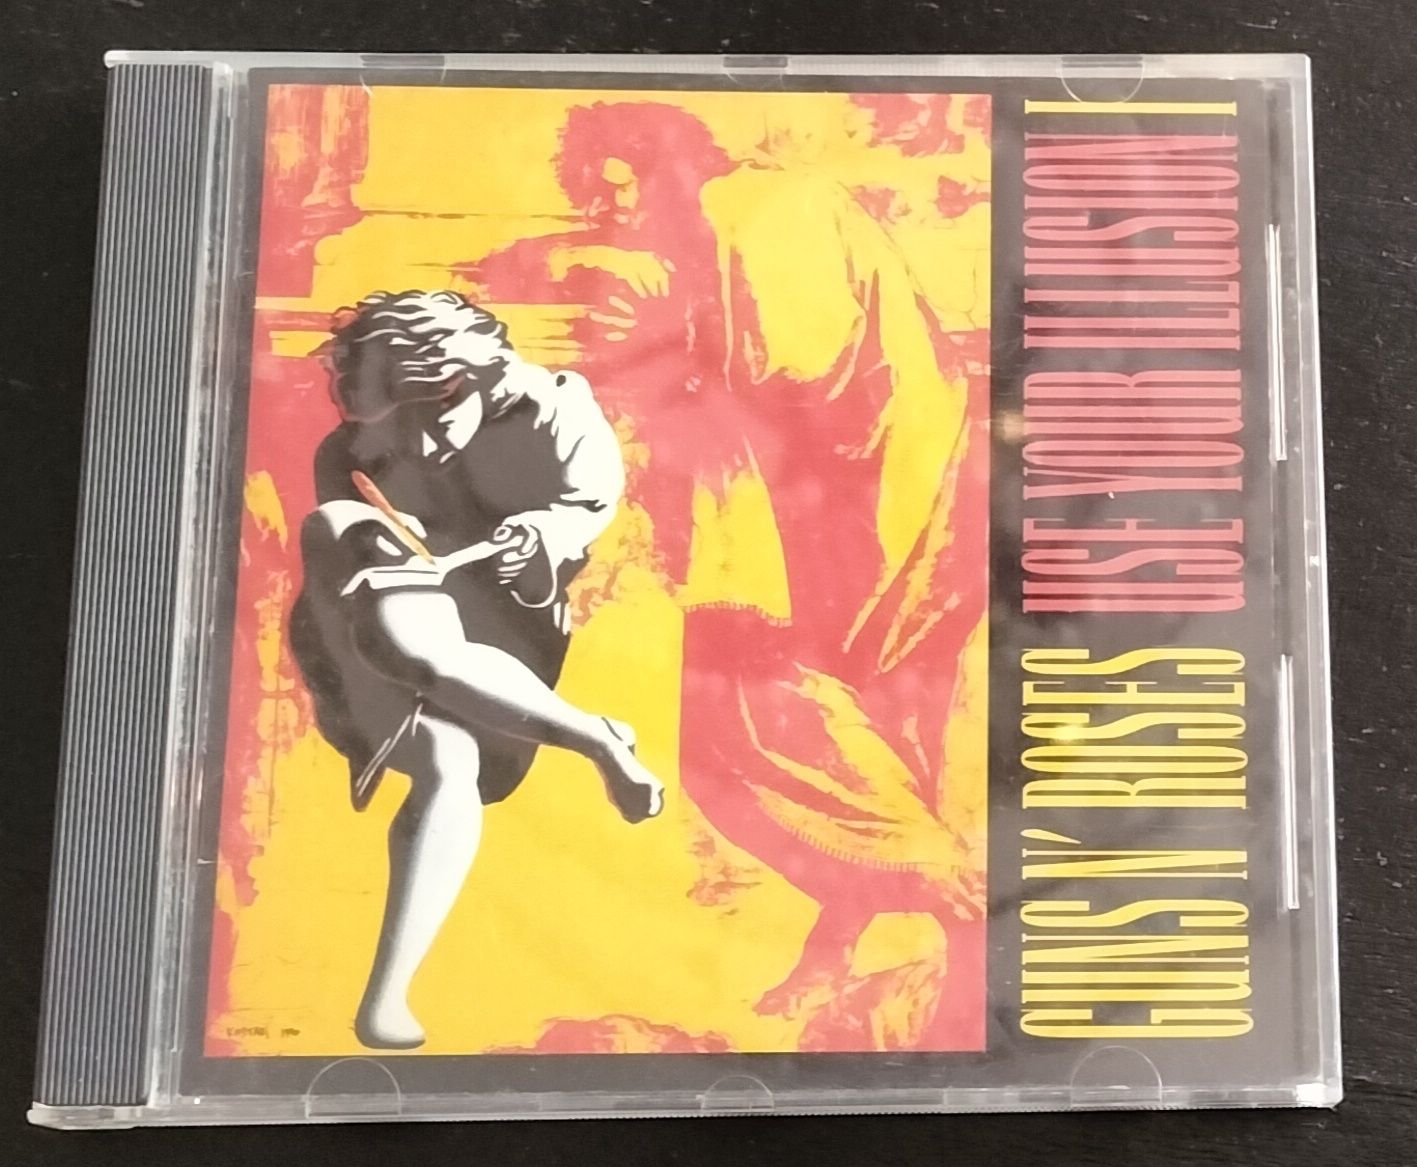 CD Guns N' Roses